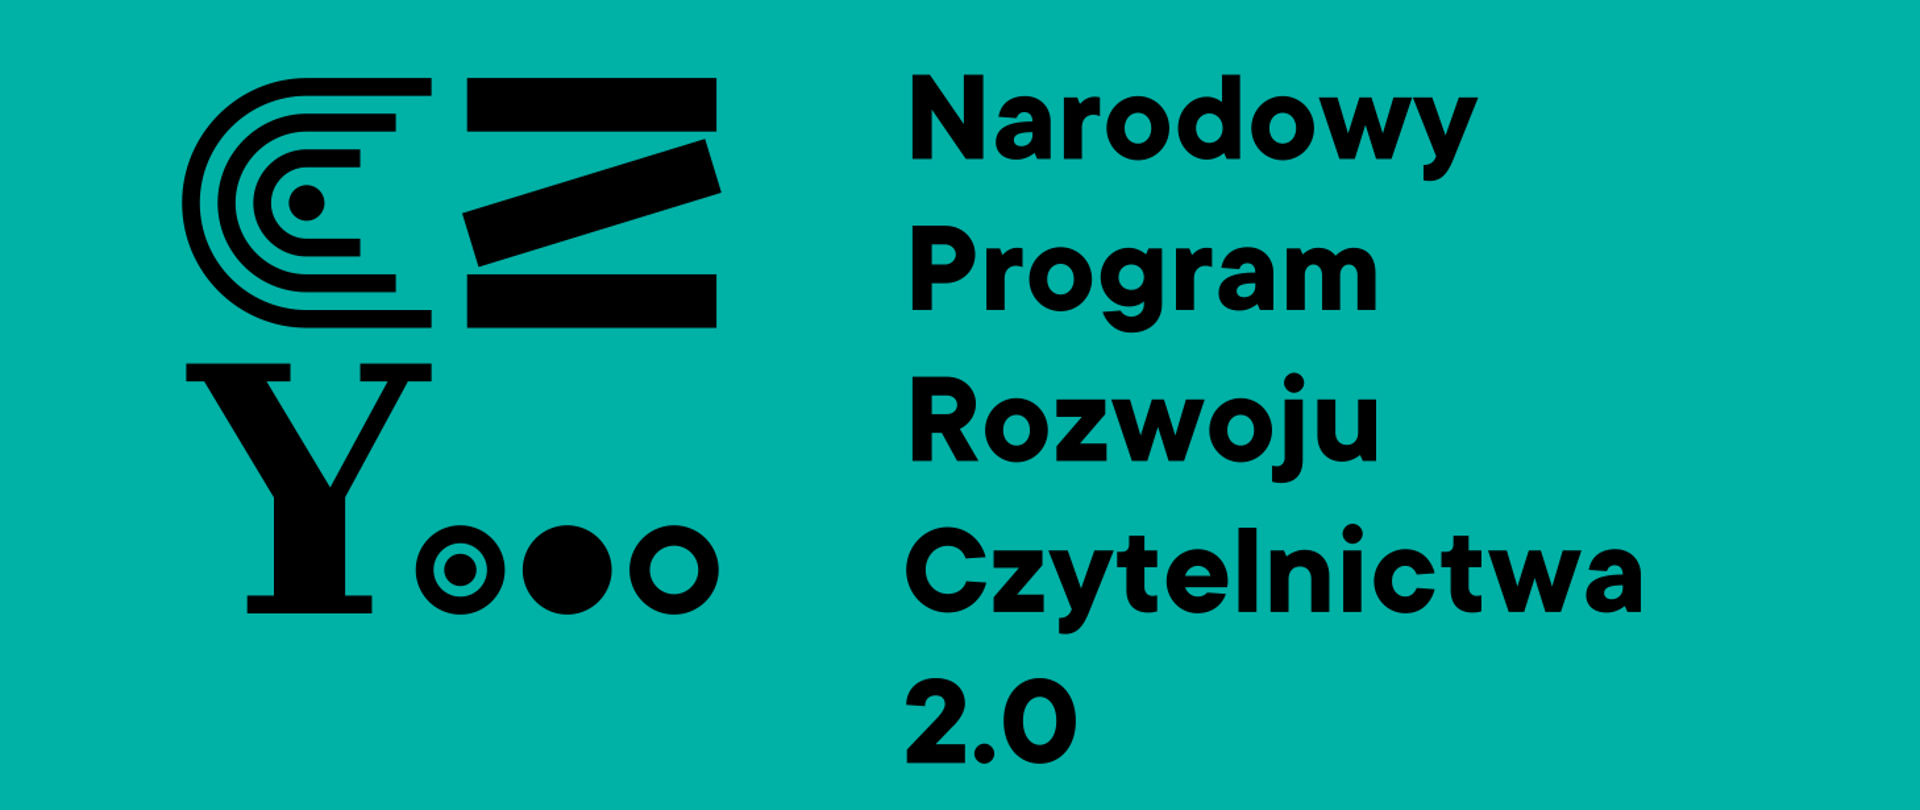 Narodowy Program Rozwoju Czytelnictwa 2.0 - Kuratorium Oświaty w Bydgoszczy  - Portal Gov.pl